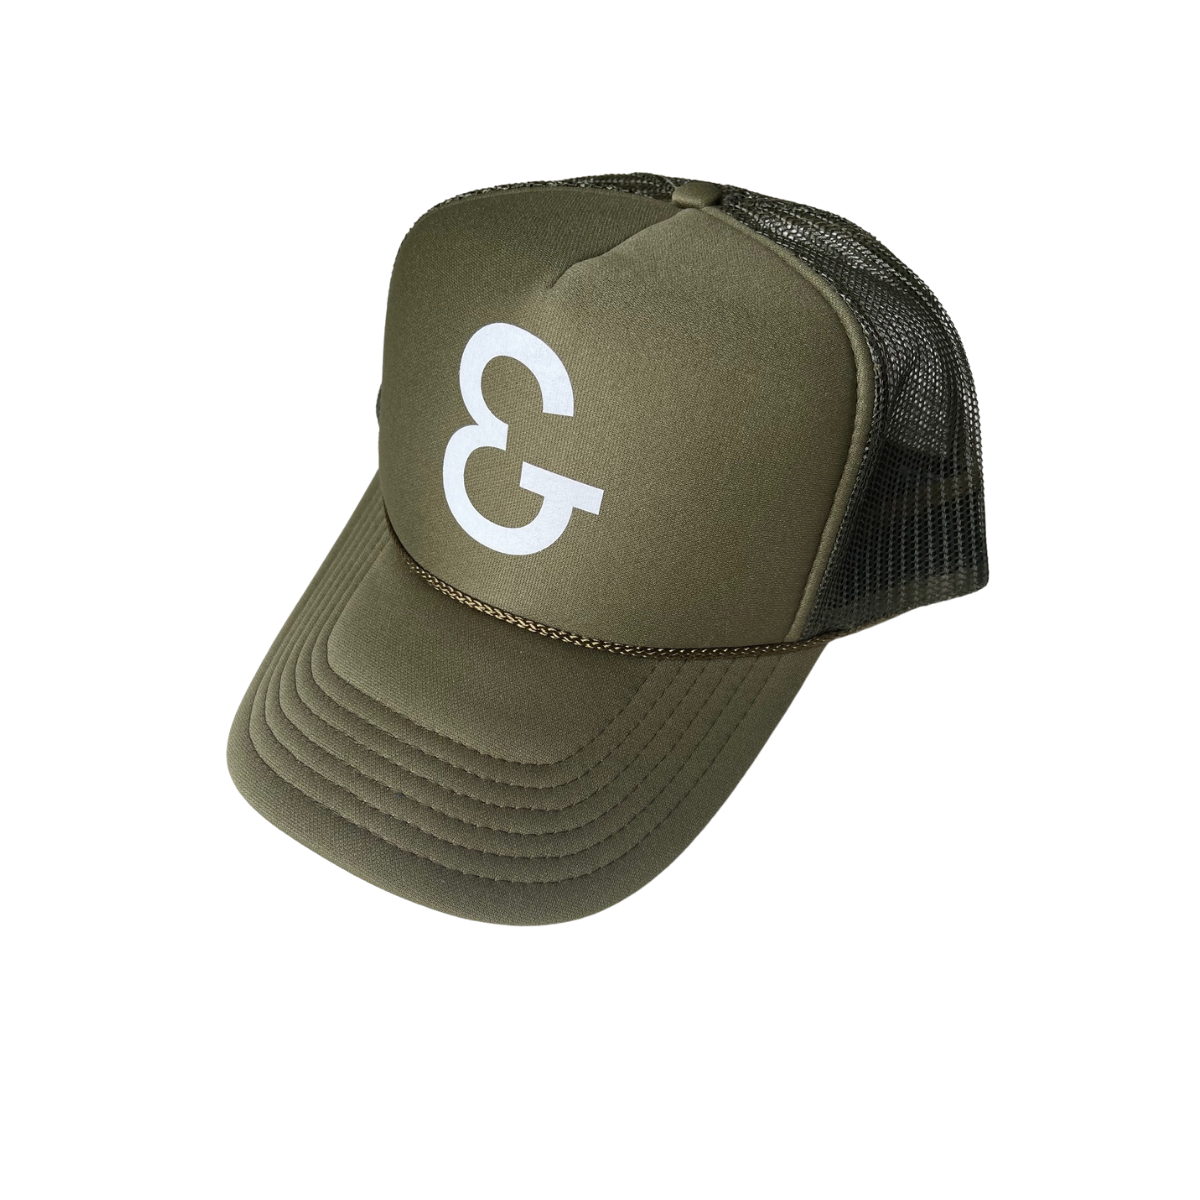 ERIN & CO Trucker Hat - Army Green